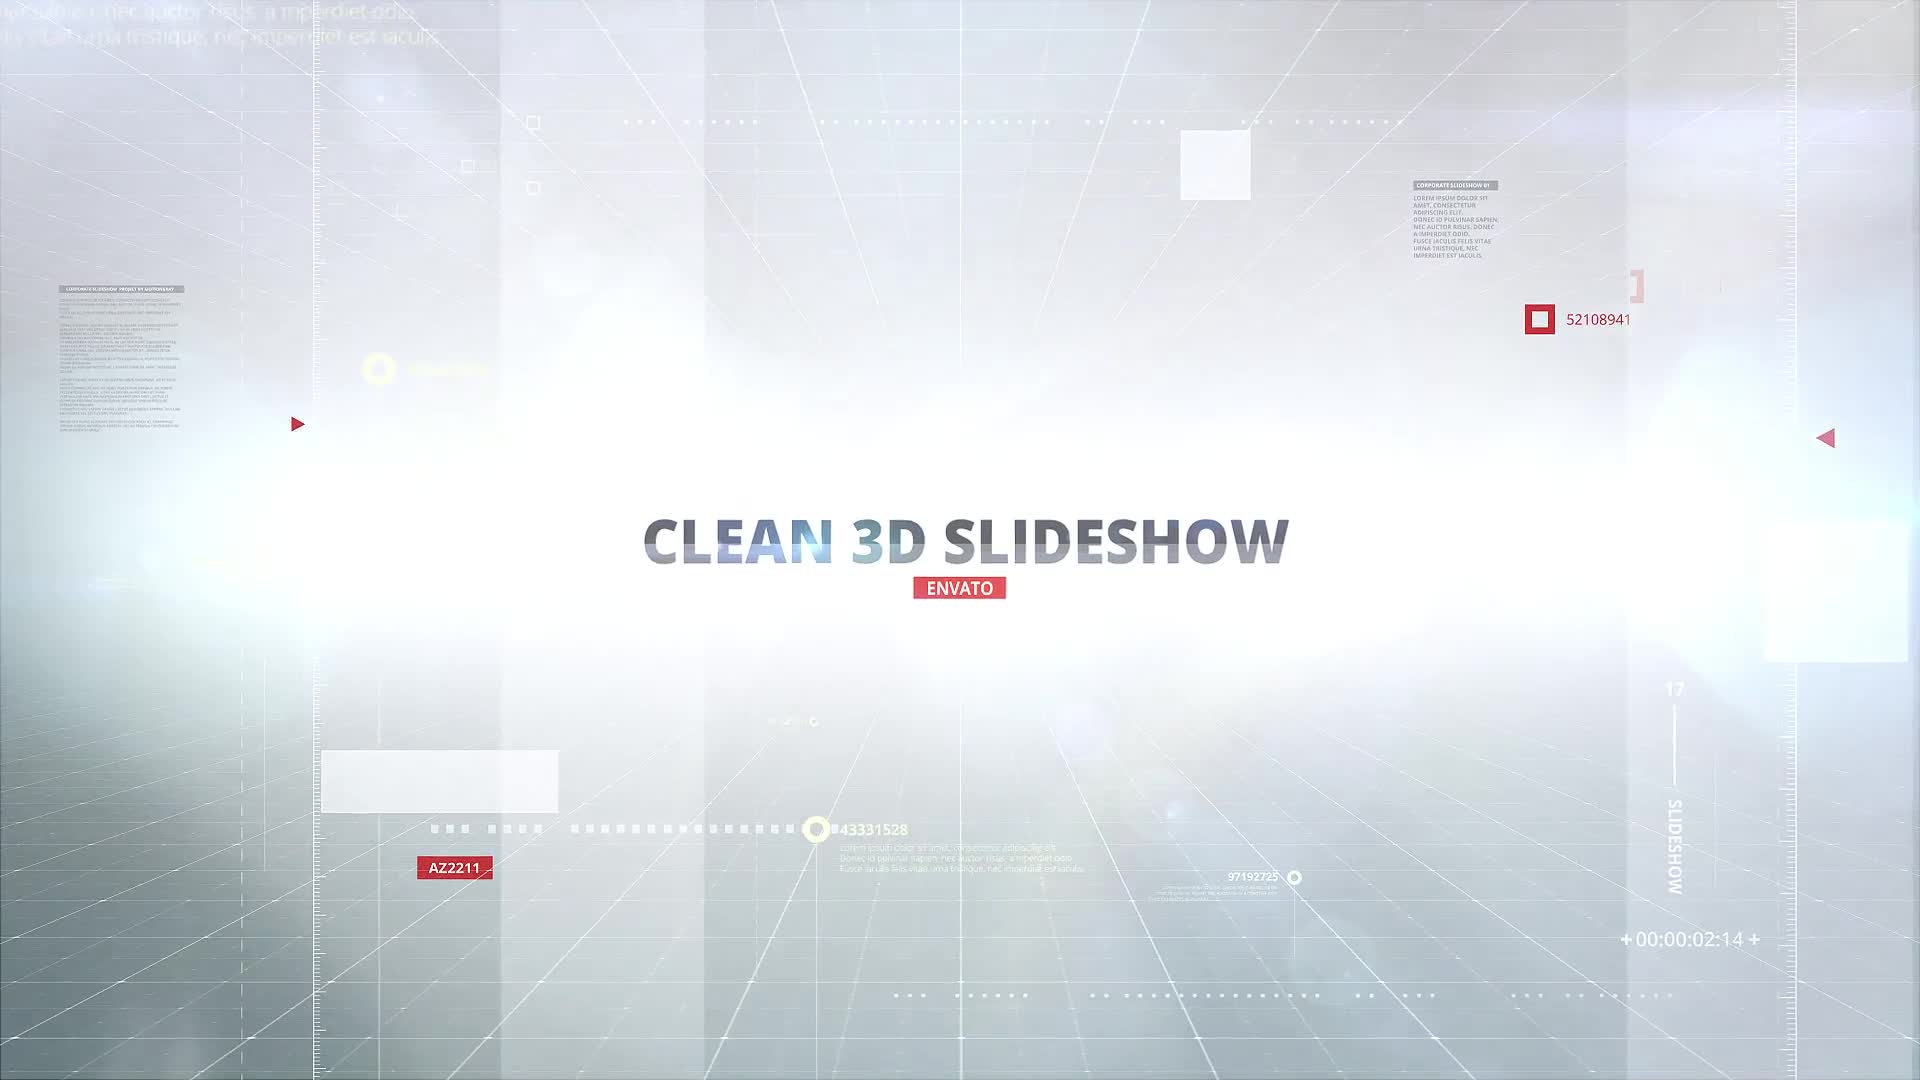 3D Cube Slideshow Videohive 35318559 Premiere Pro Image 1